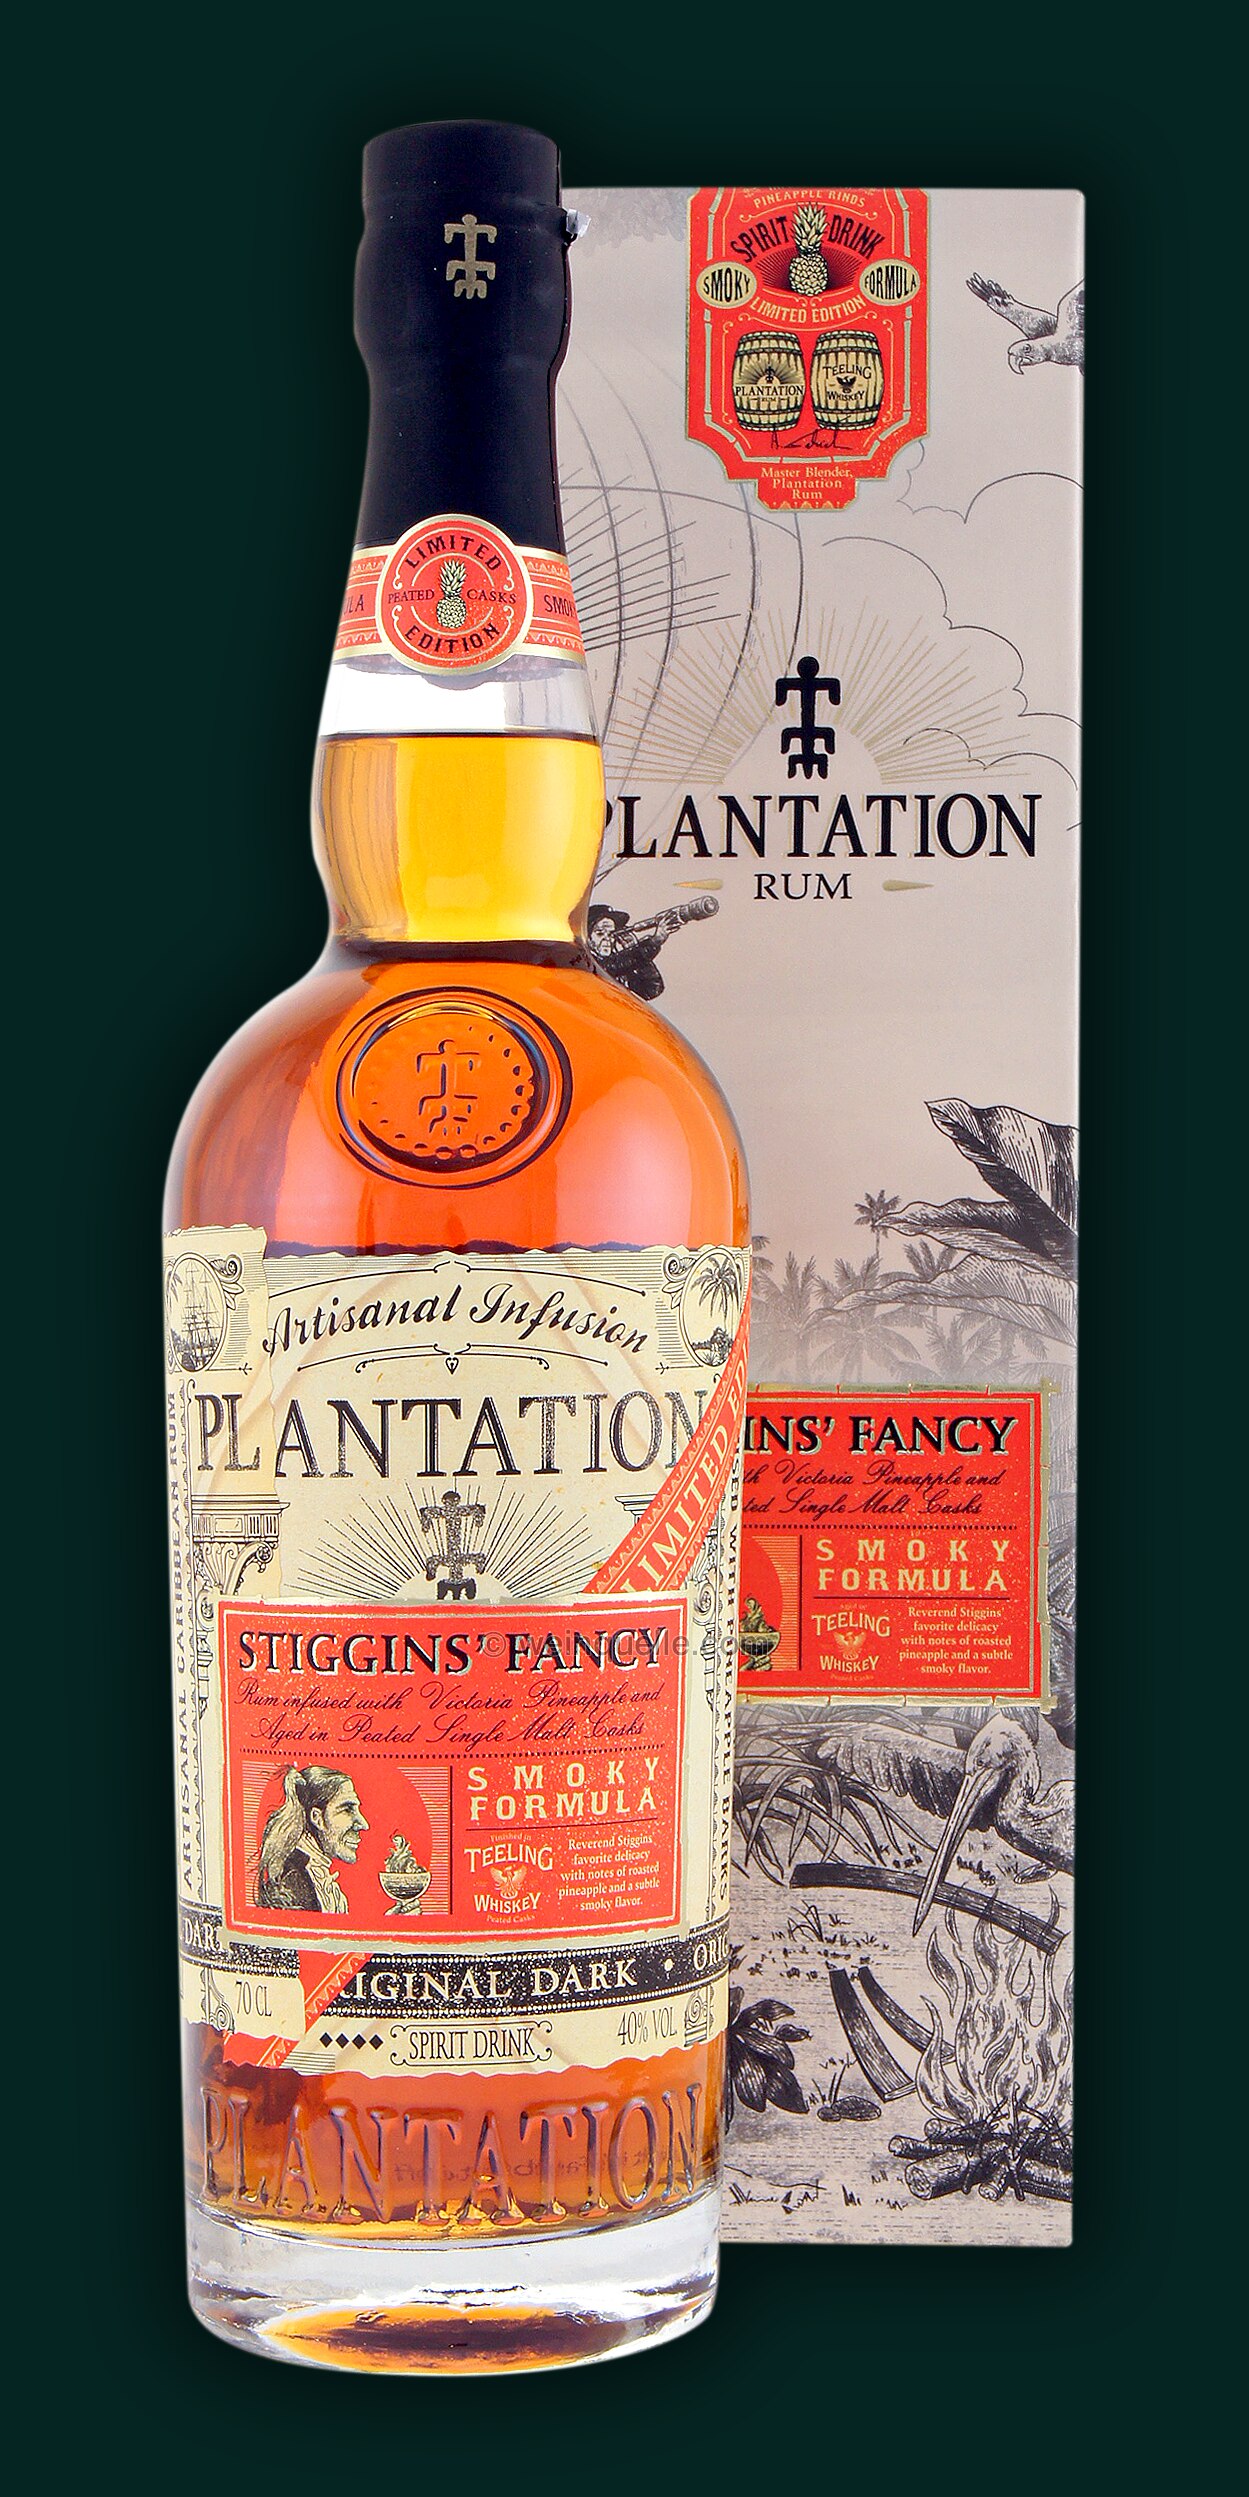 Plantation Pineapple Fancy Smoky - Formula Weinquelle Stiggins Lühmann